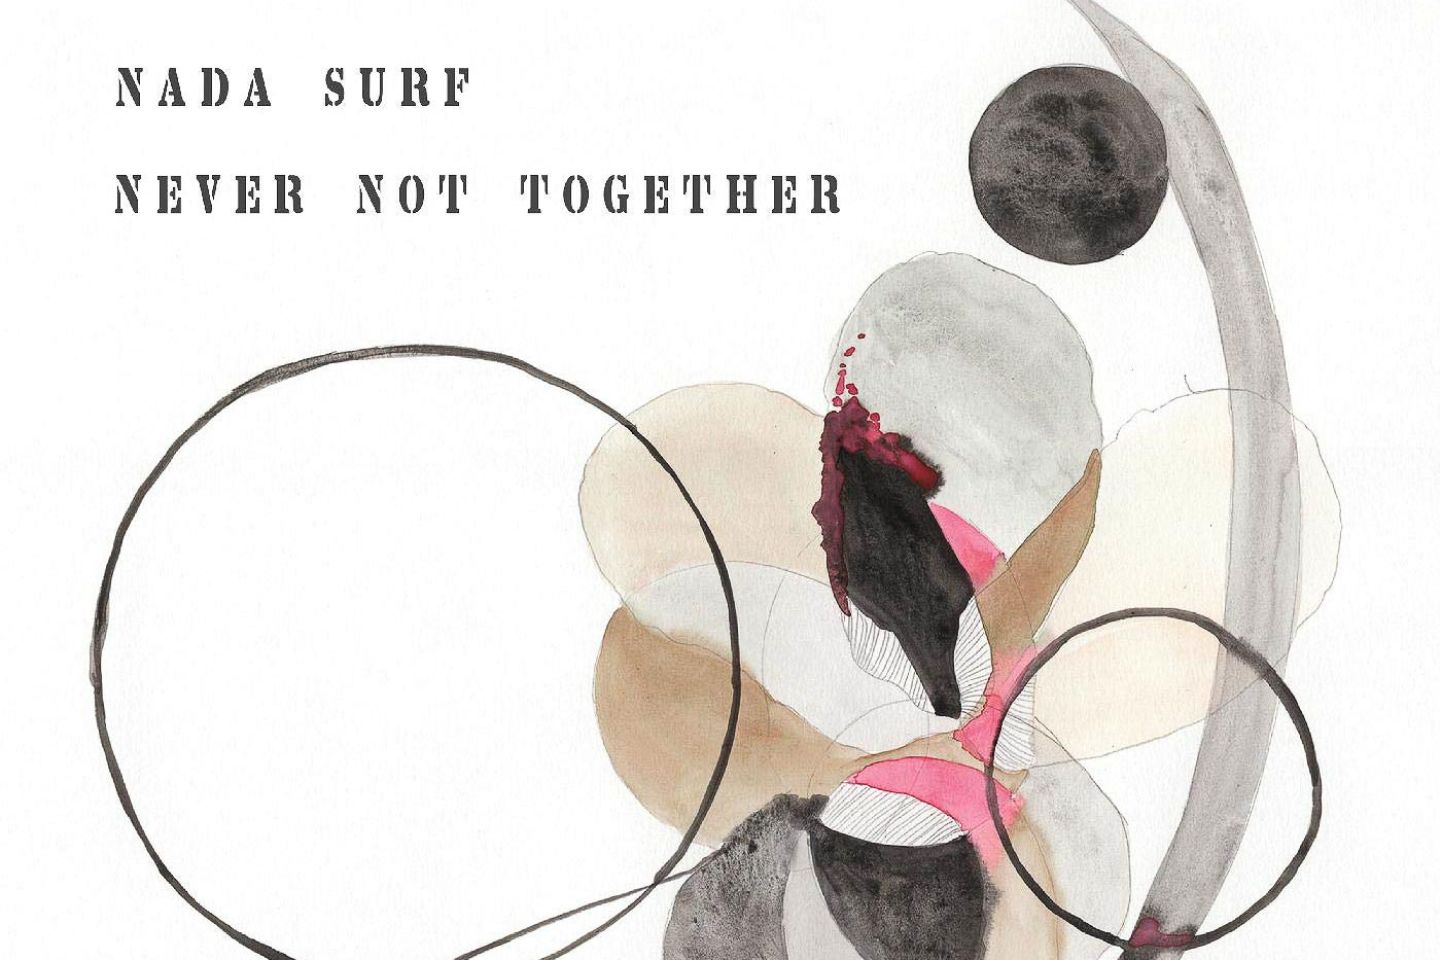 Nada Surf “Never Not Together” (City Slang, 2020)